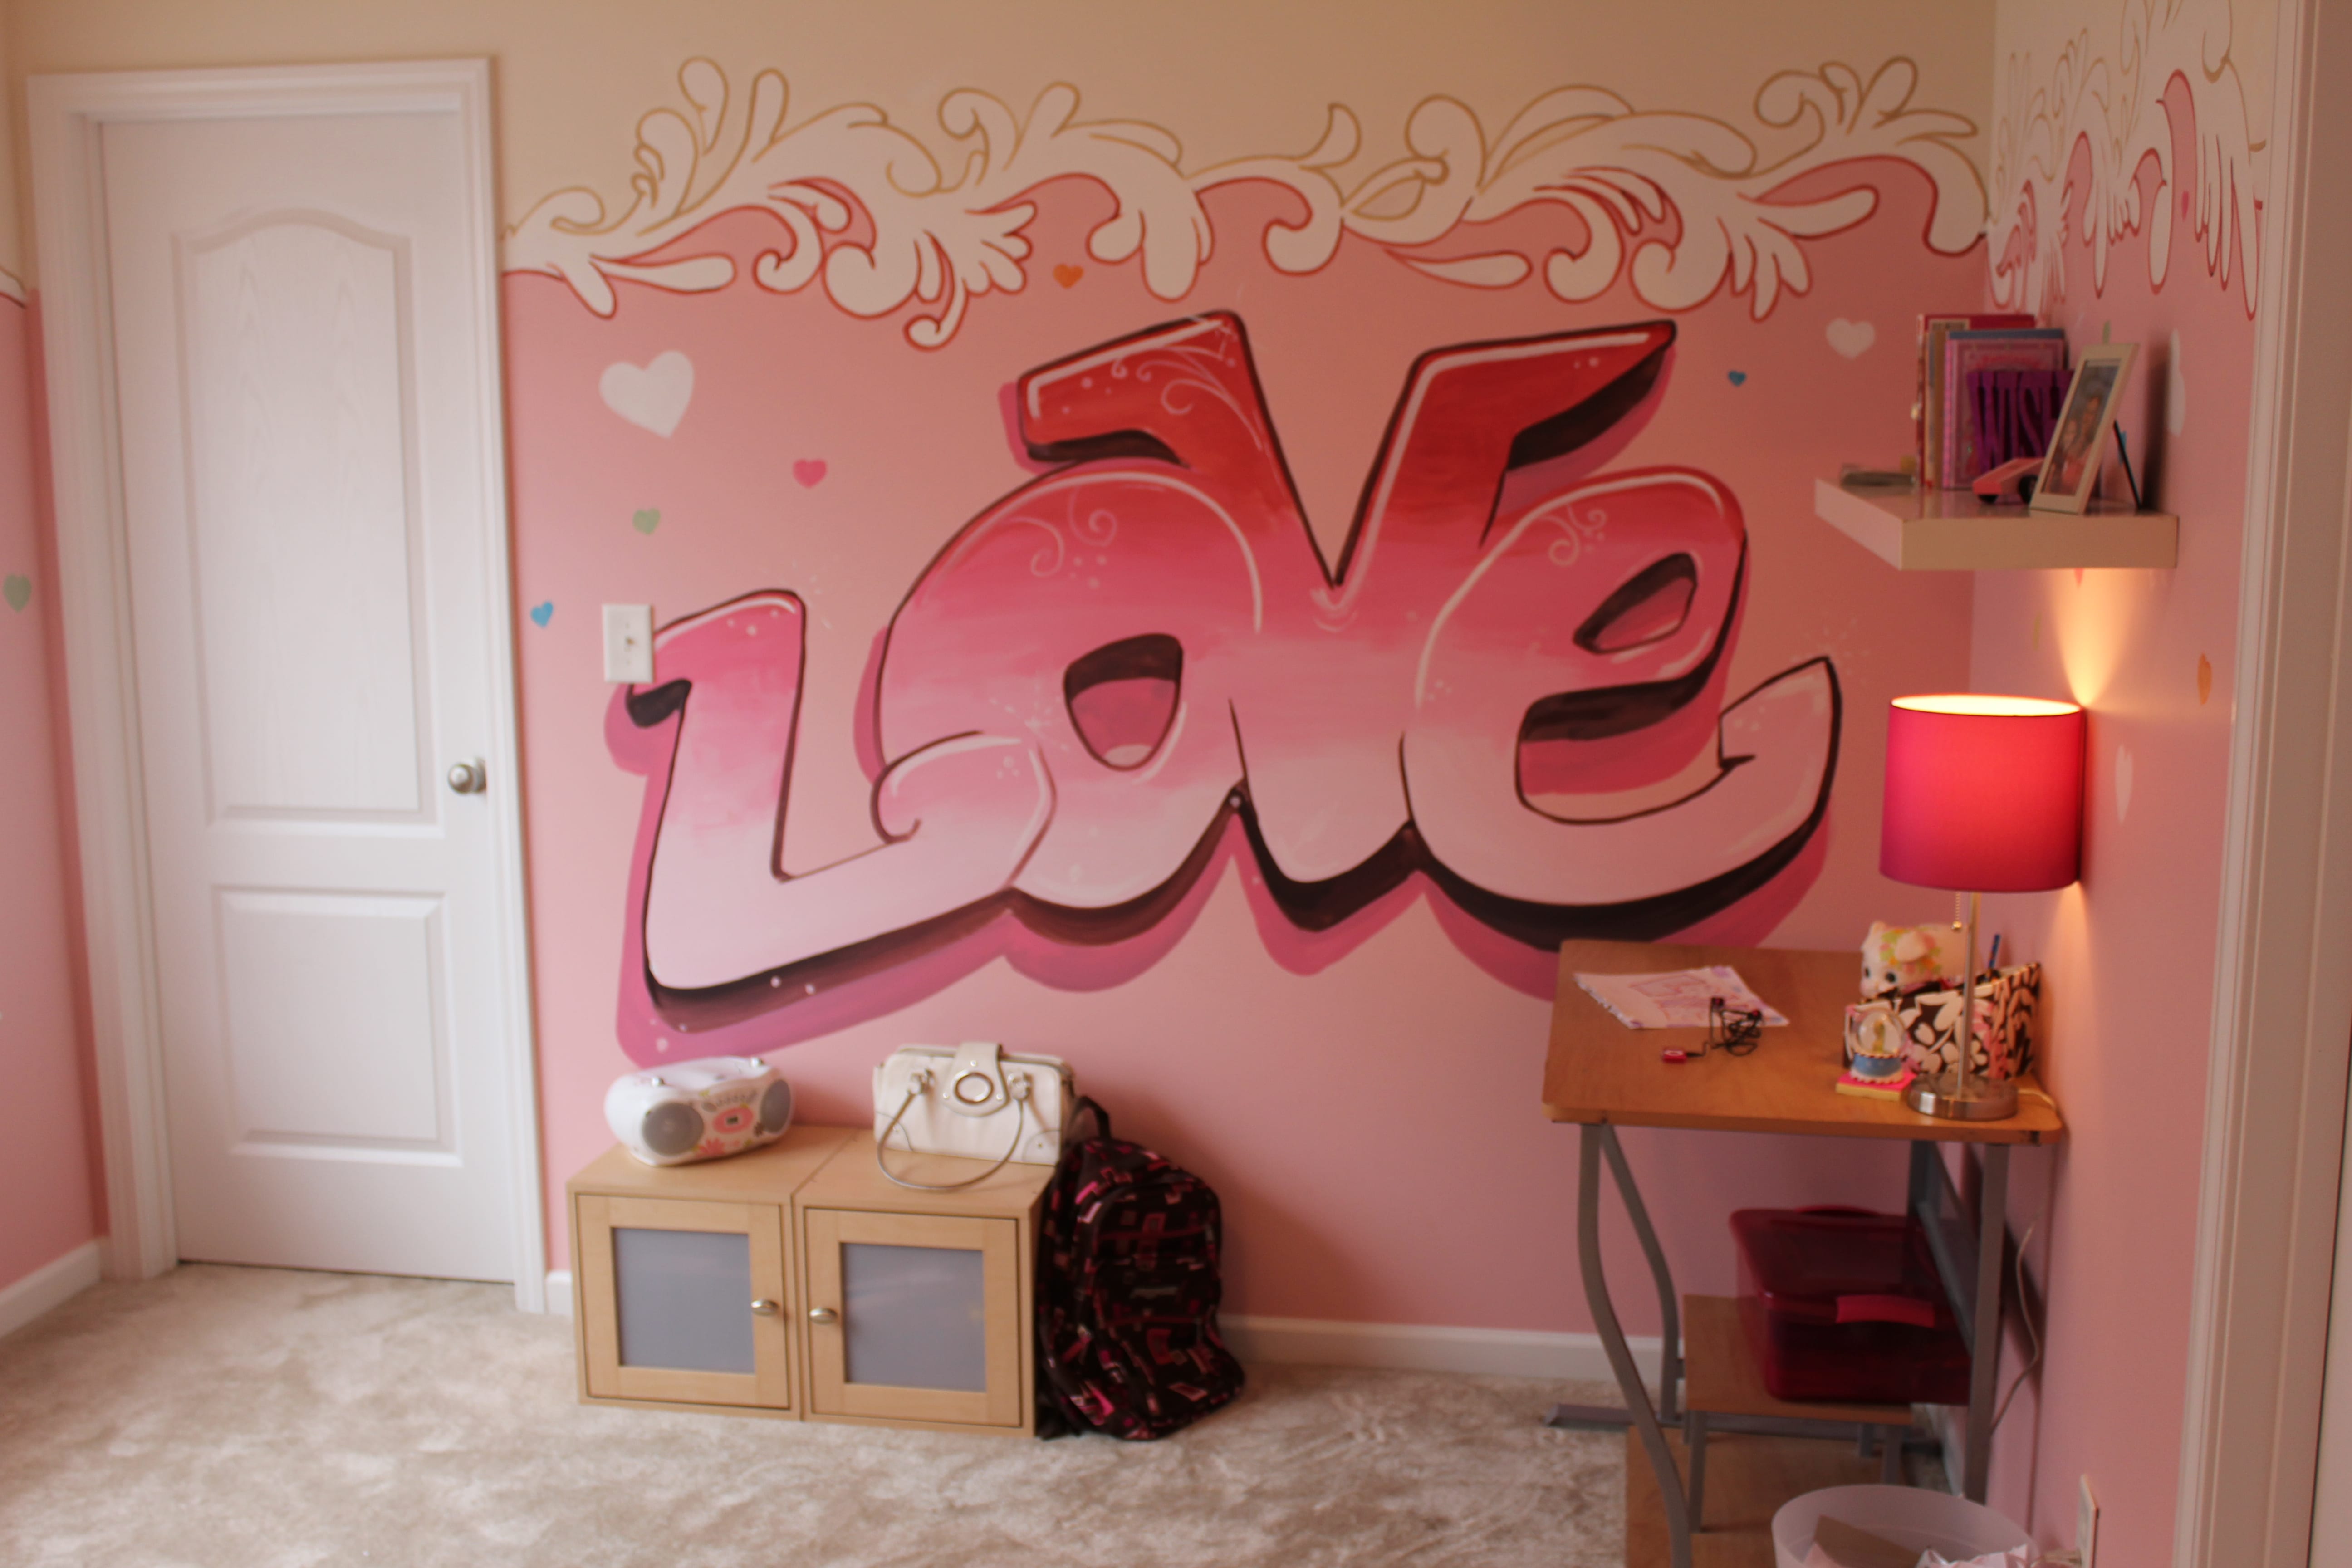 rosa Wandfarbe mit Love schrift- teppich beige- schreibtisch aus holz mit nachttischlampe in pink